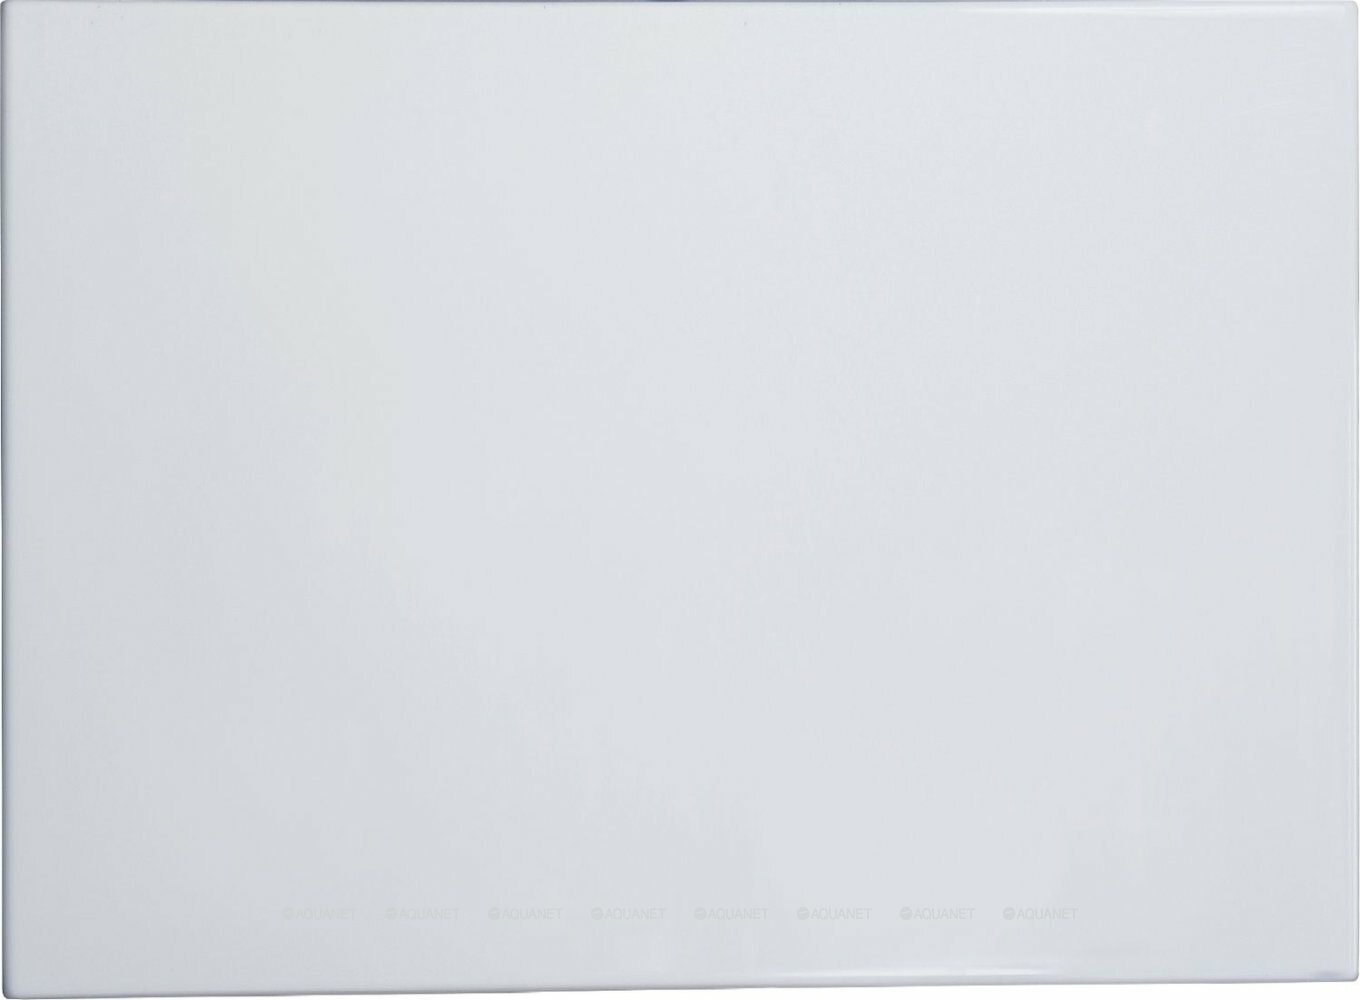 Универсальная боковая панель Vagnerplast VPPA09002EP2-04 90 см